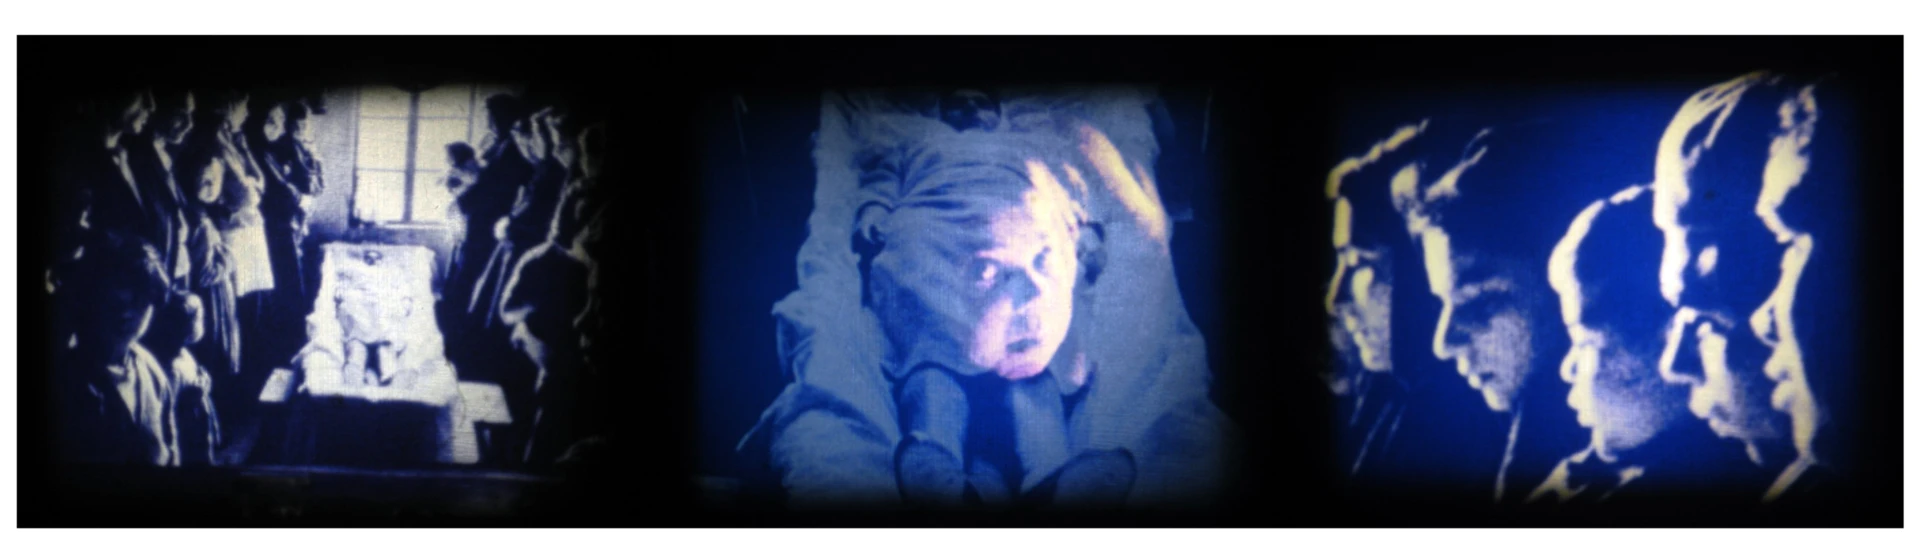 《最後的凝視——那張照片》，1984，8釐米影片截圖， 獲第7屆金穗獎「最佳8釐米實驗片」　©高重黎攝影-圖片